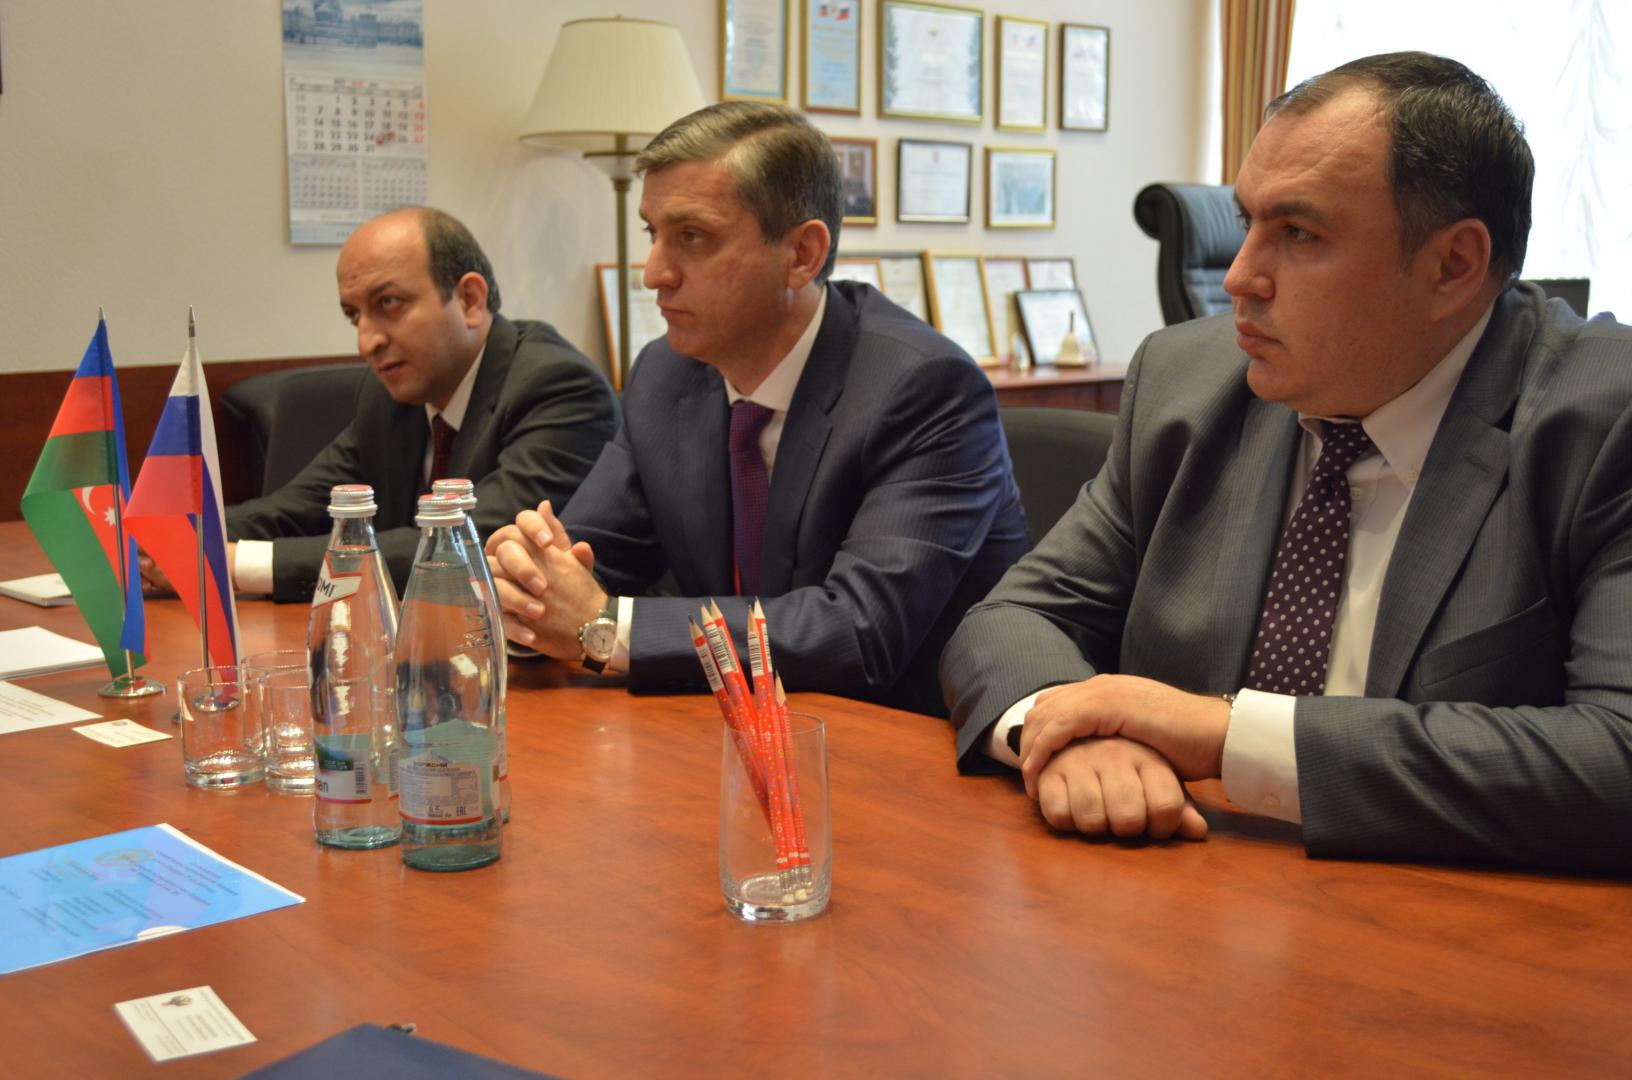 Контрольно-счетную палату Санкт-Петербурга посетила делегация из Азербайджанской республики